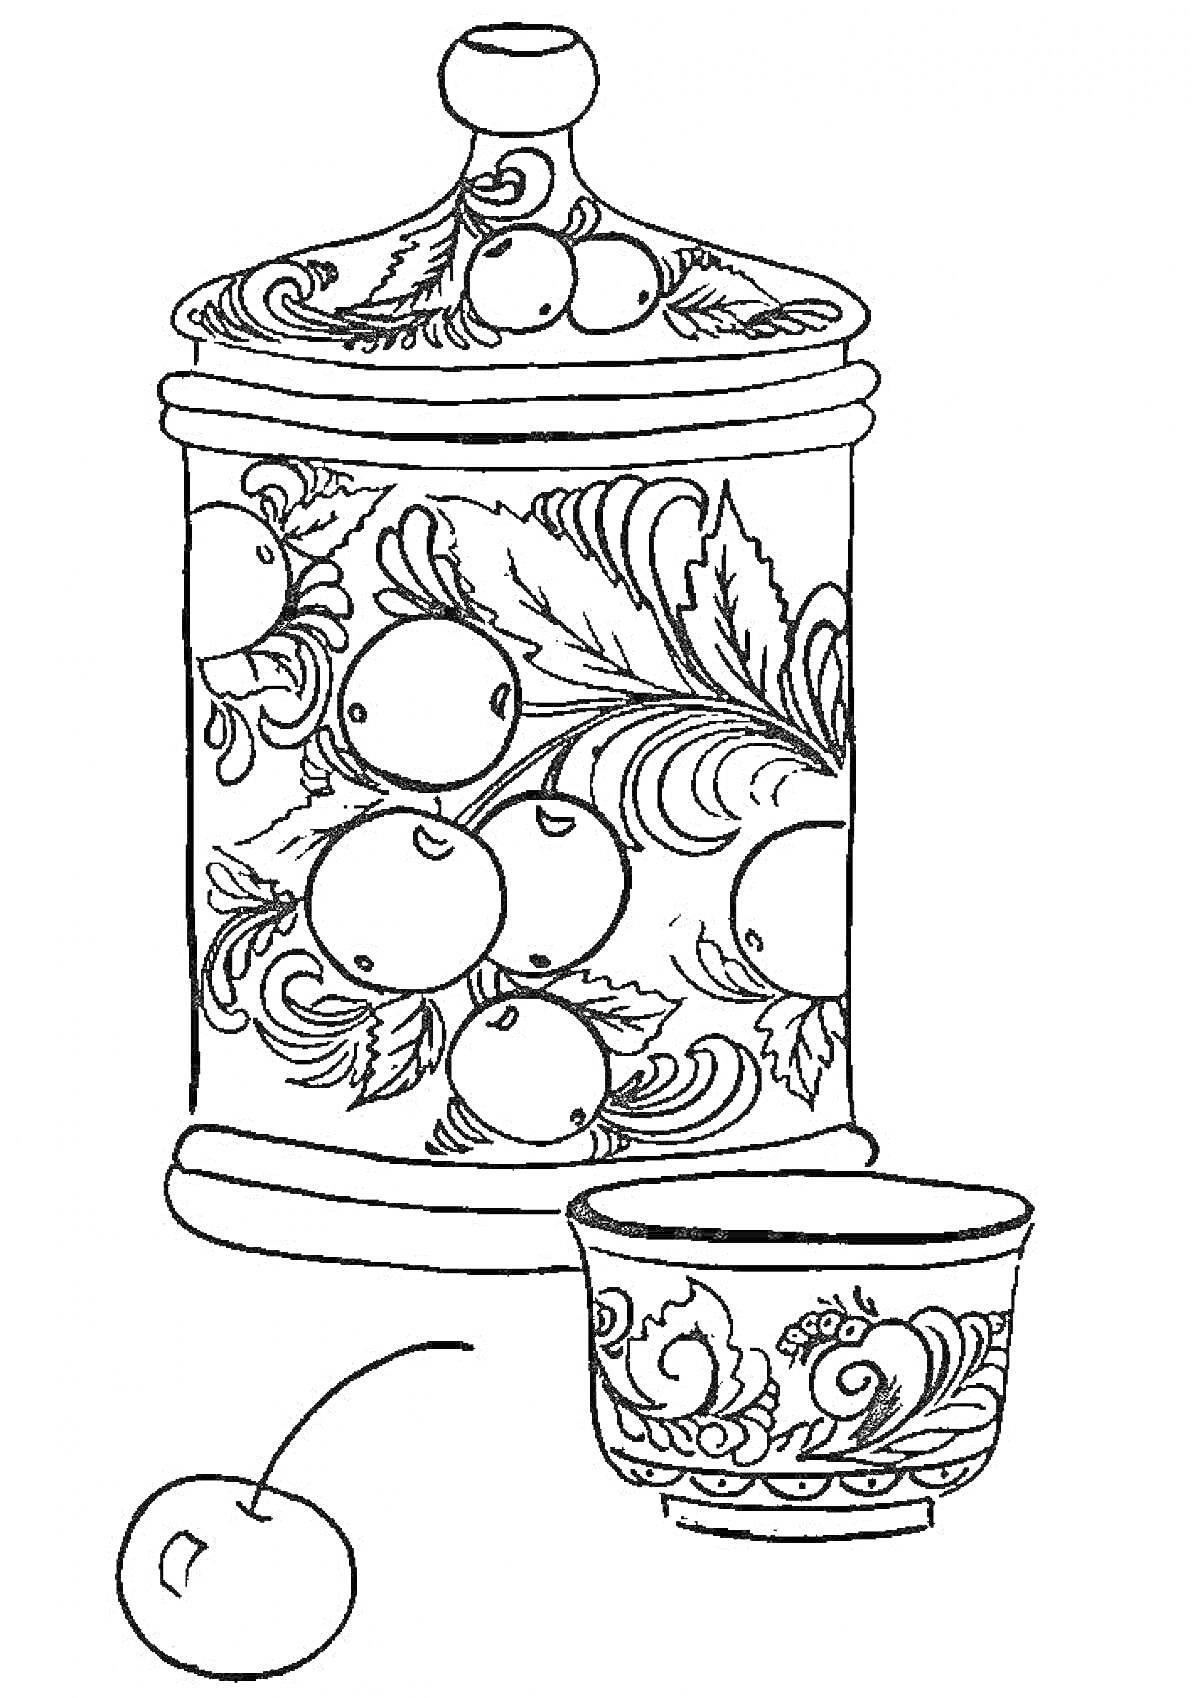 Раскраска баночка с крышкой и рисунком в виде листьев и ягод, чашка с аналогичным рисунком, отдельная ягода